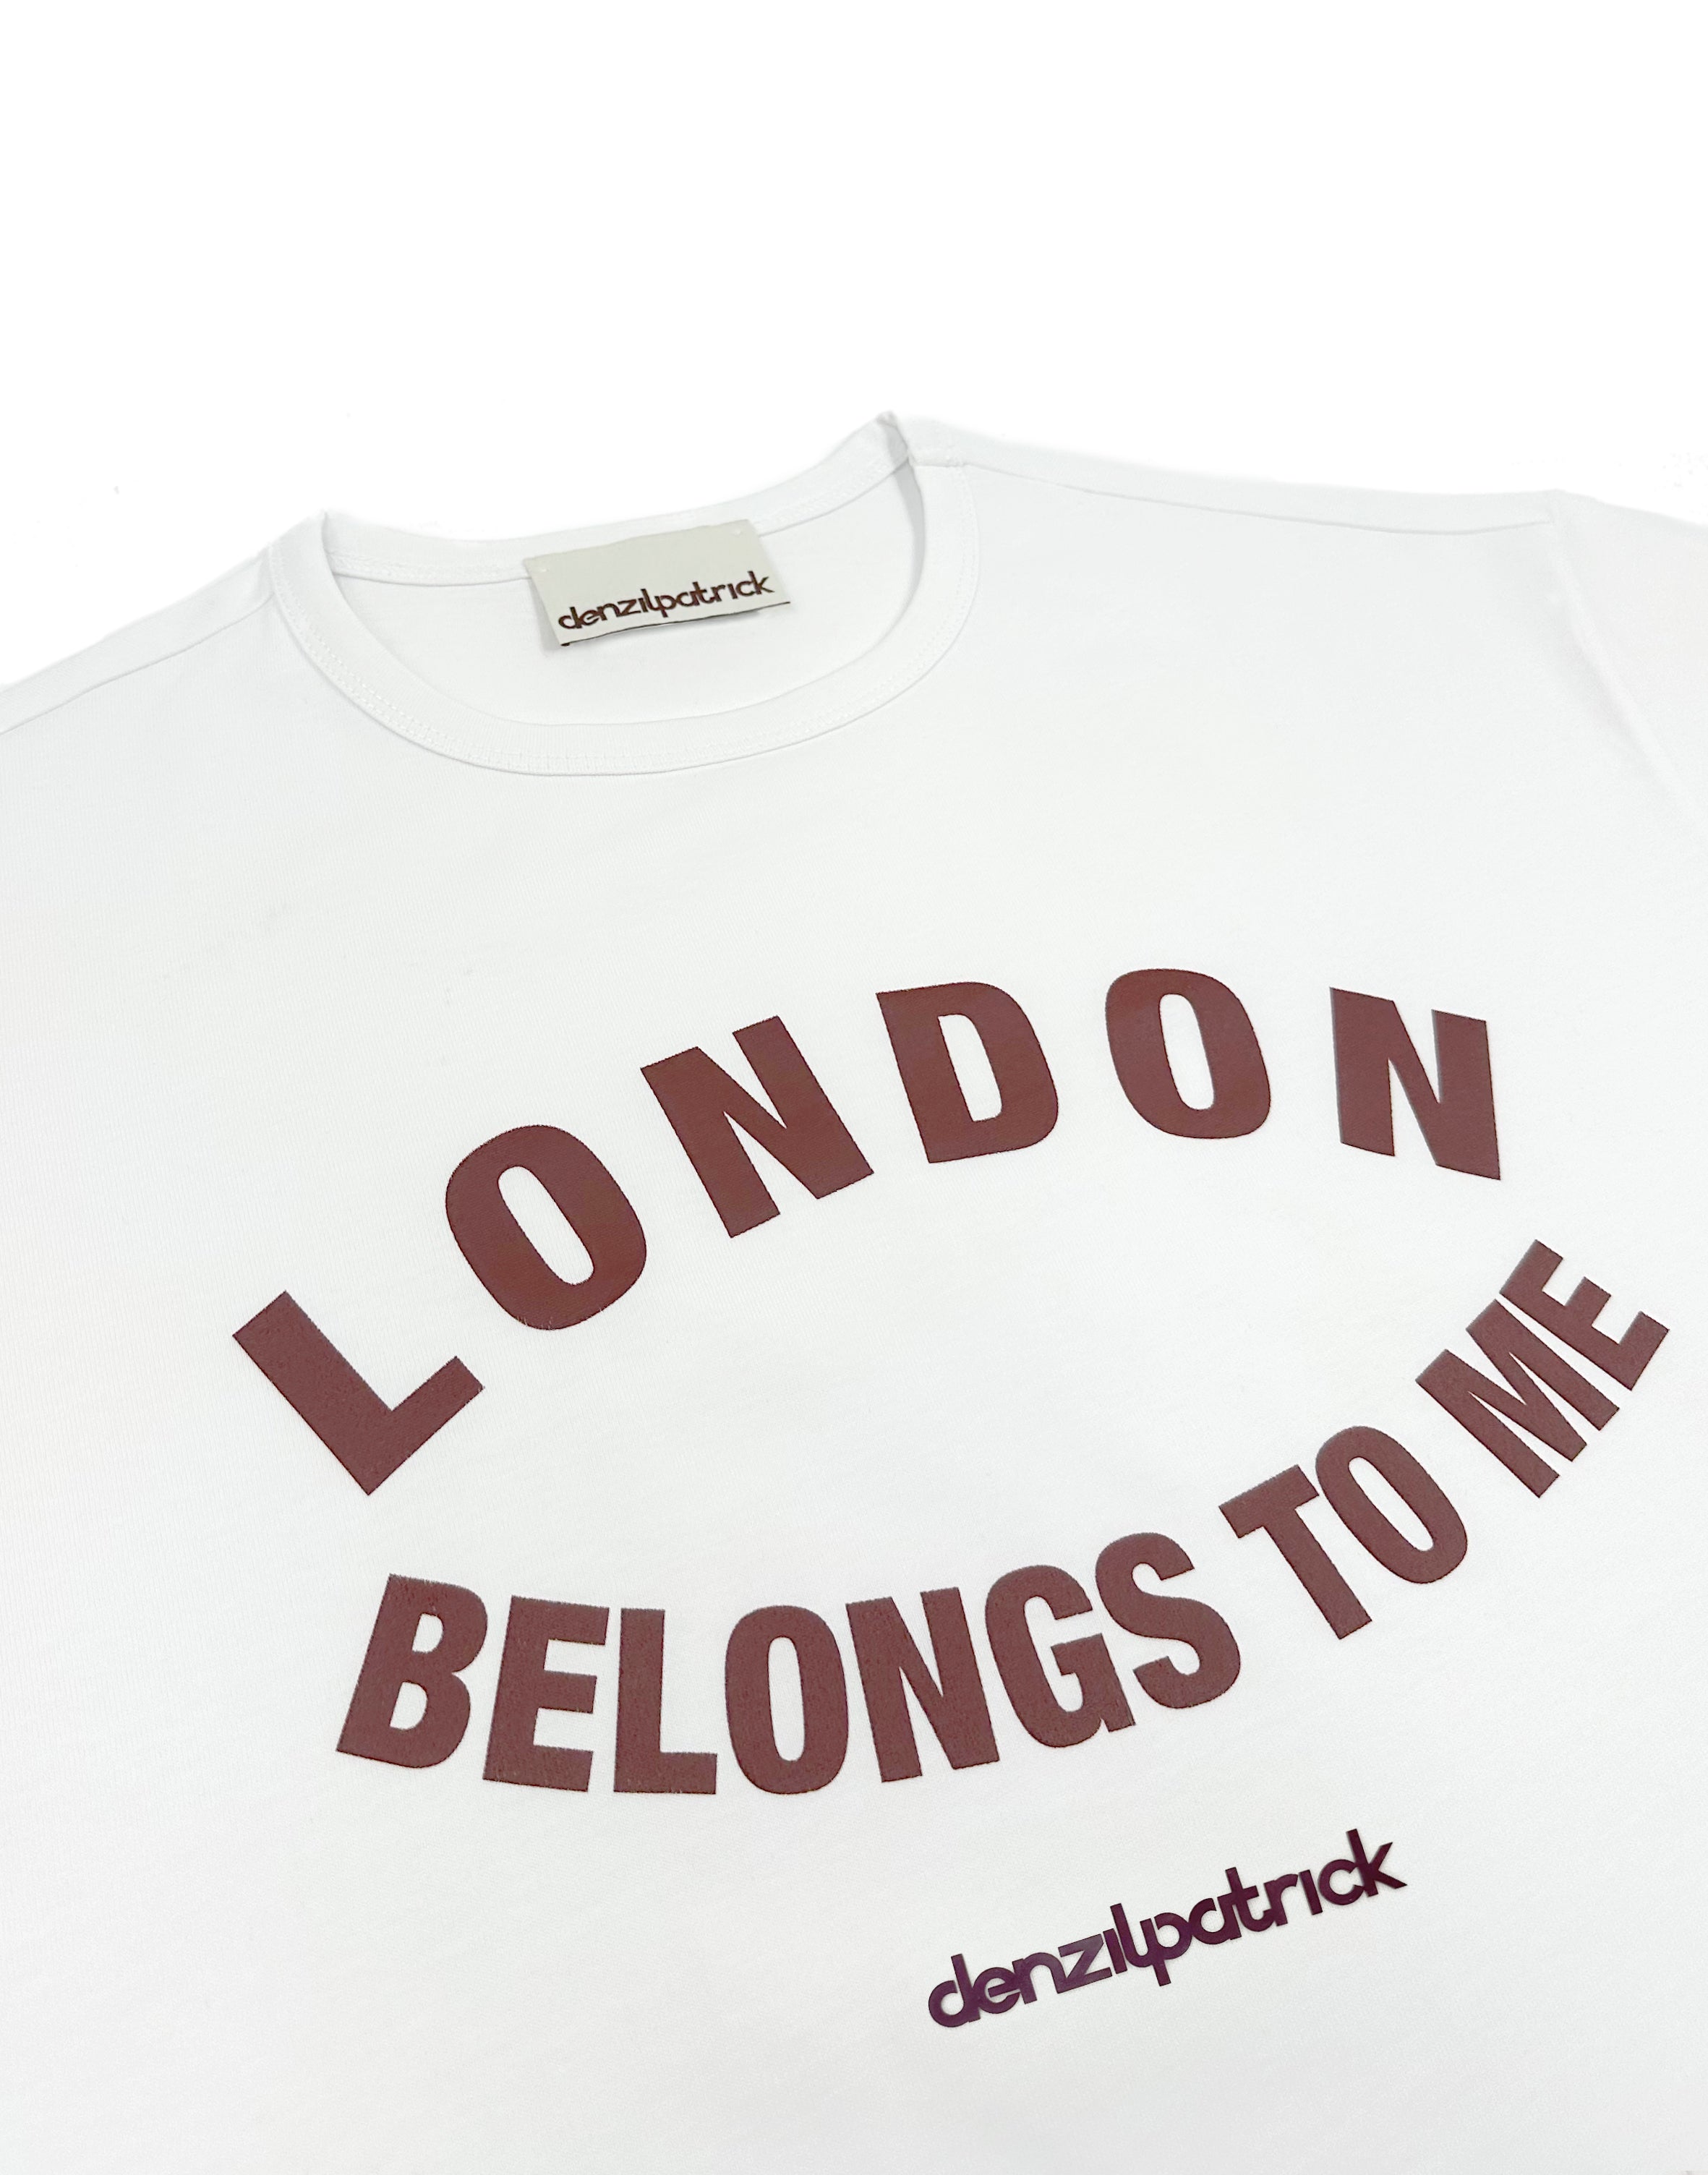 london-belongs-to-me tee